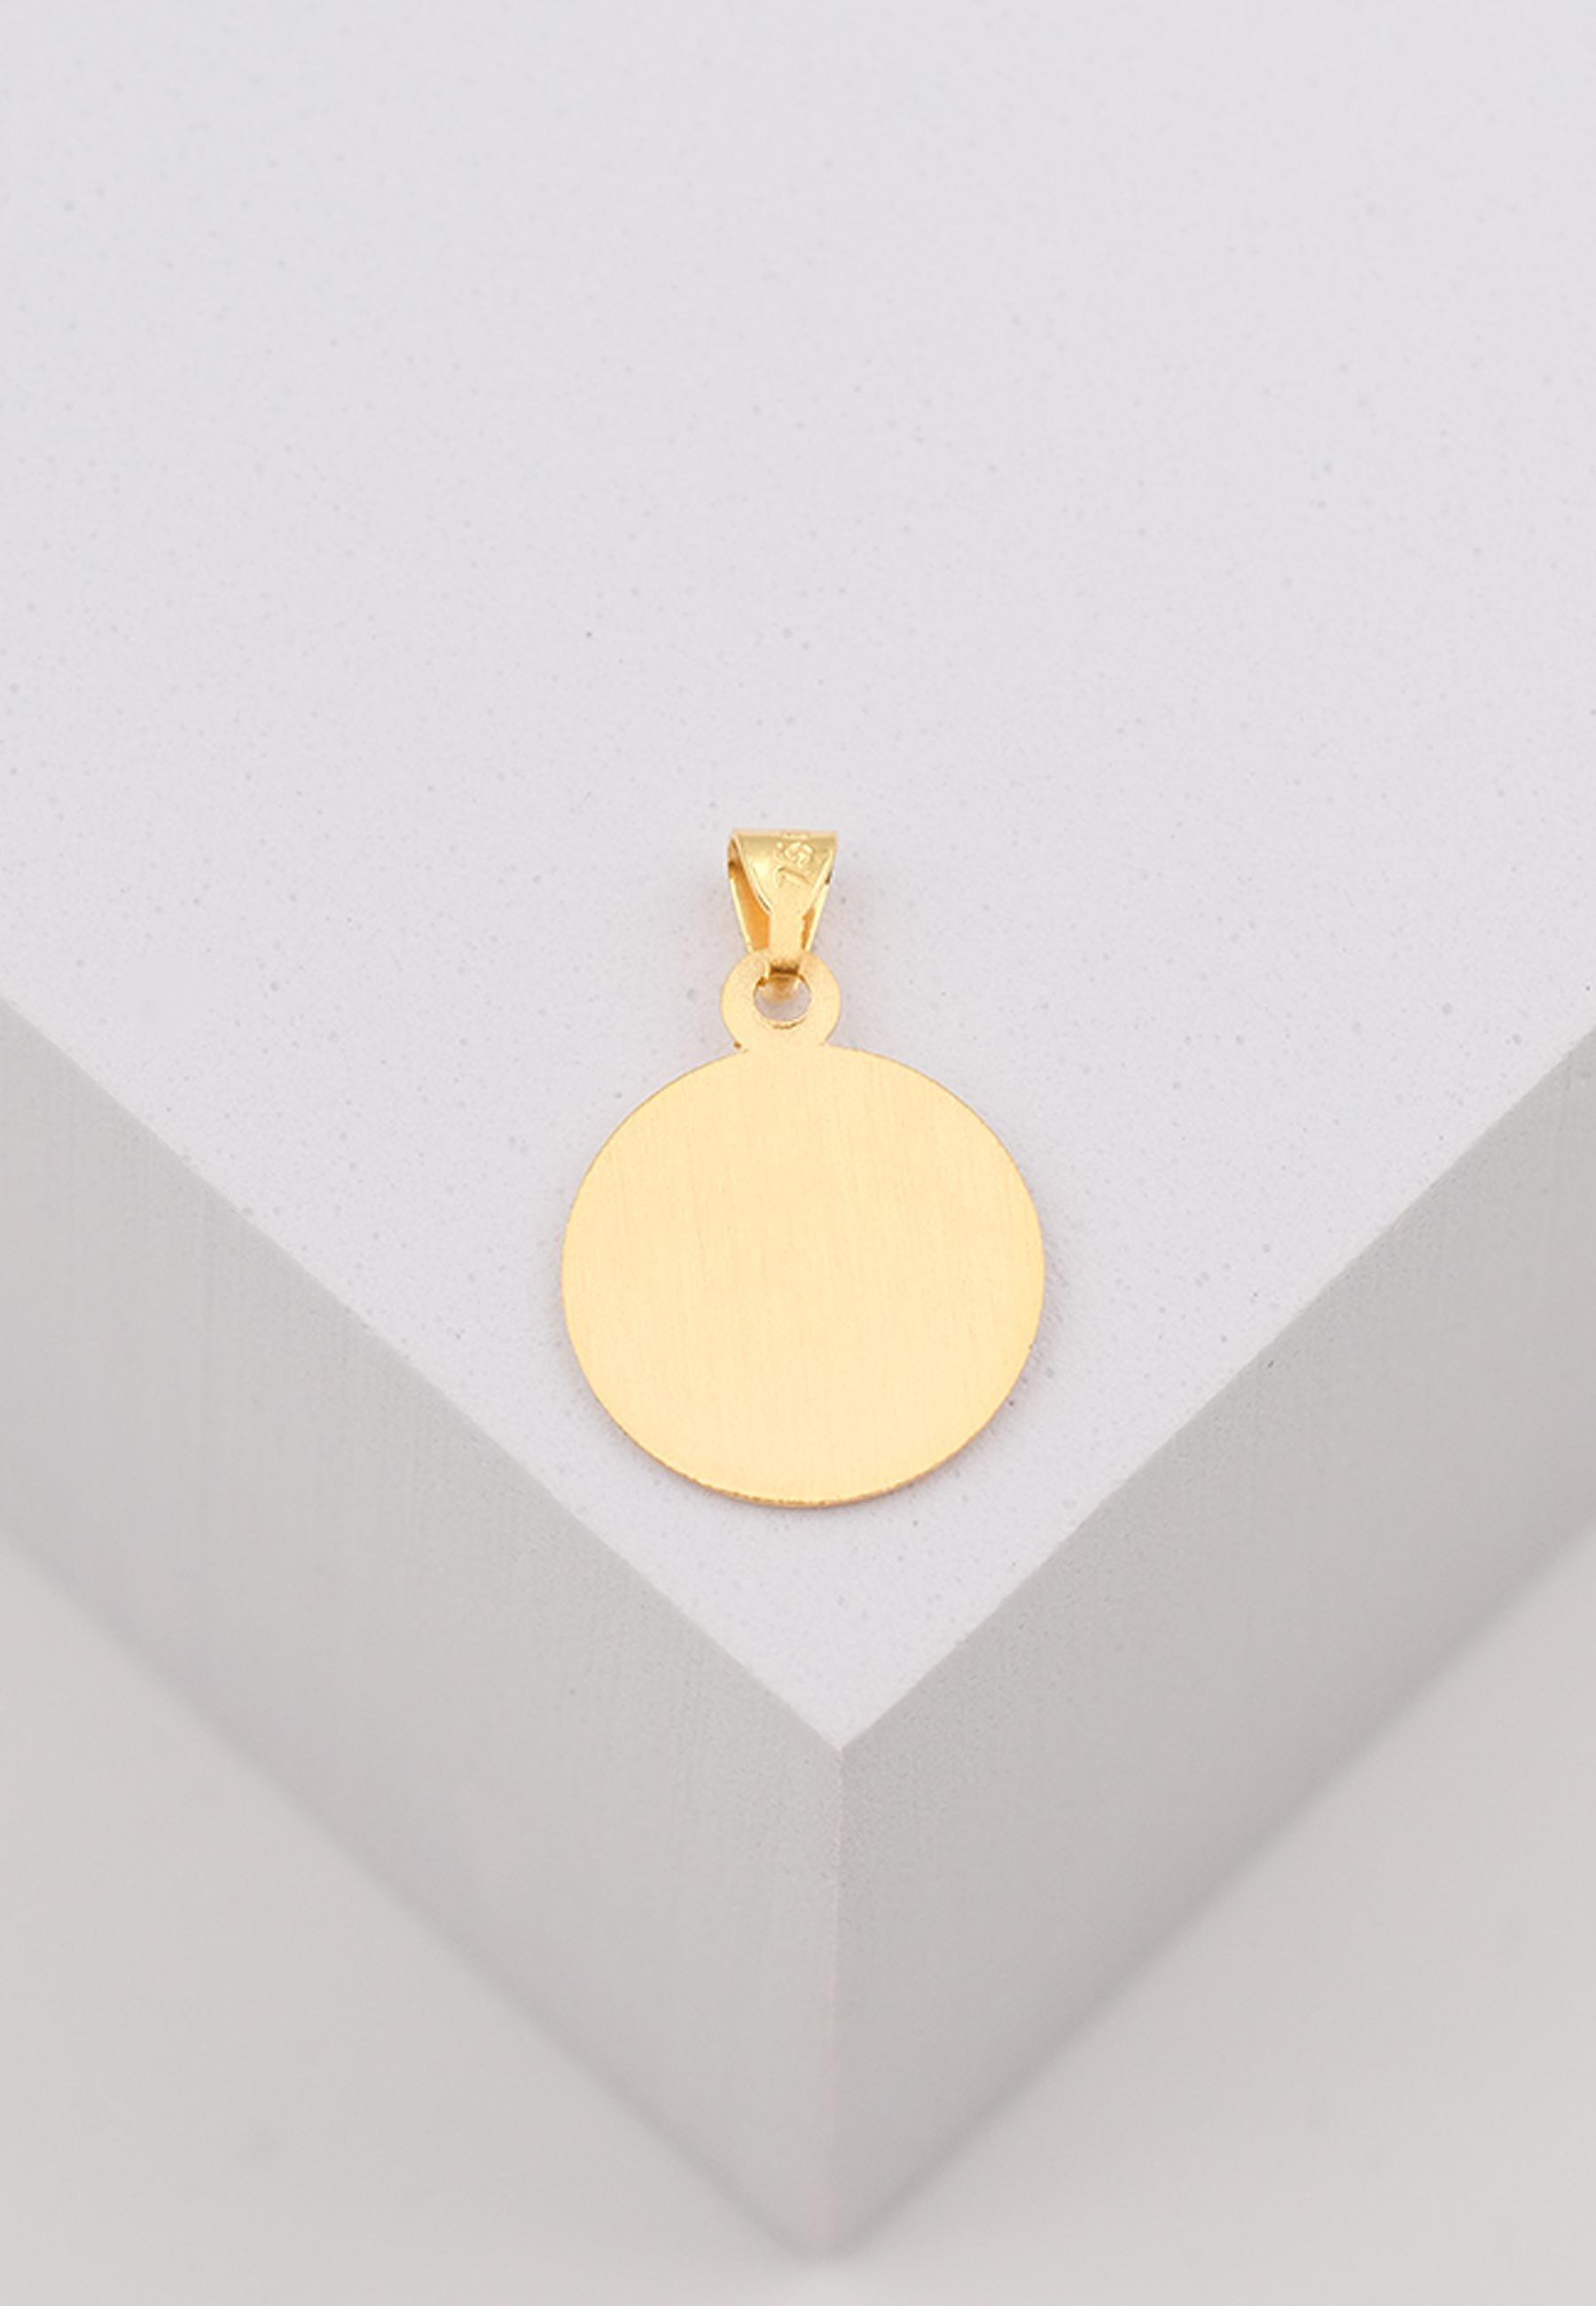 MUAU Schmuck  Pendentif médaille Christophorus or jaune 750, 12mm 